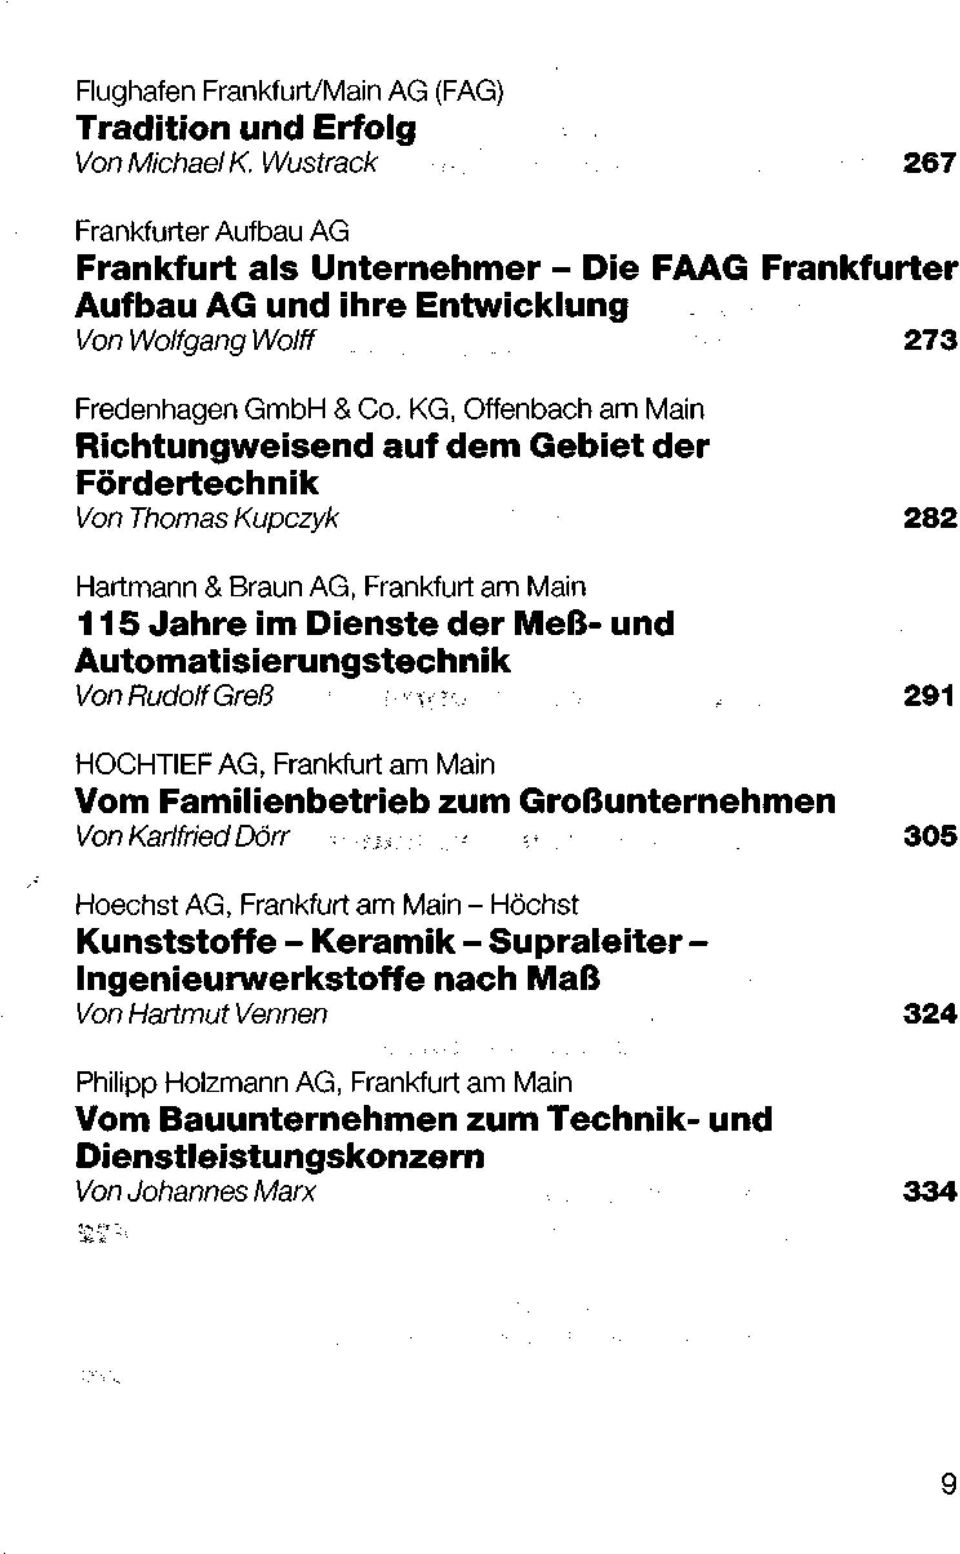 KG, Offenbach am Main Richtungweisend auf dem Gebiet der Fördertechnik Von Thomas Kupczyk 282 Hartmann & Braun AG, 115 Jahre im Dienste der Meß- und Automatisierungstechnik Von